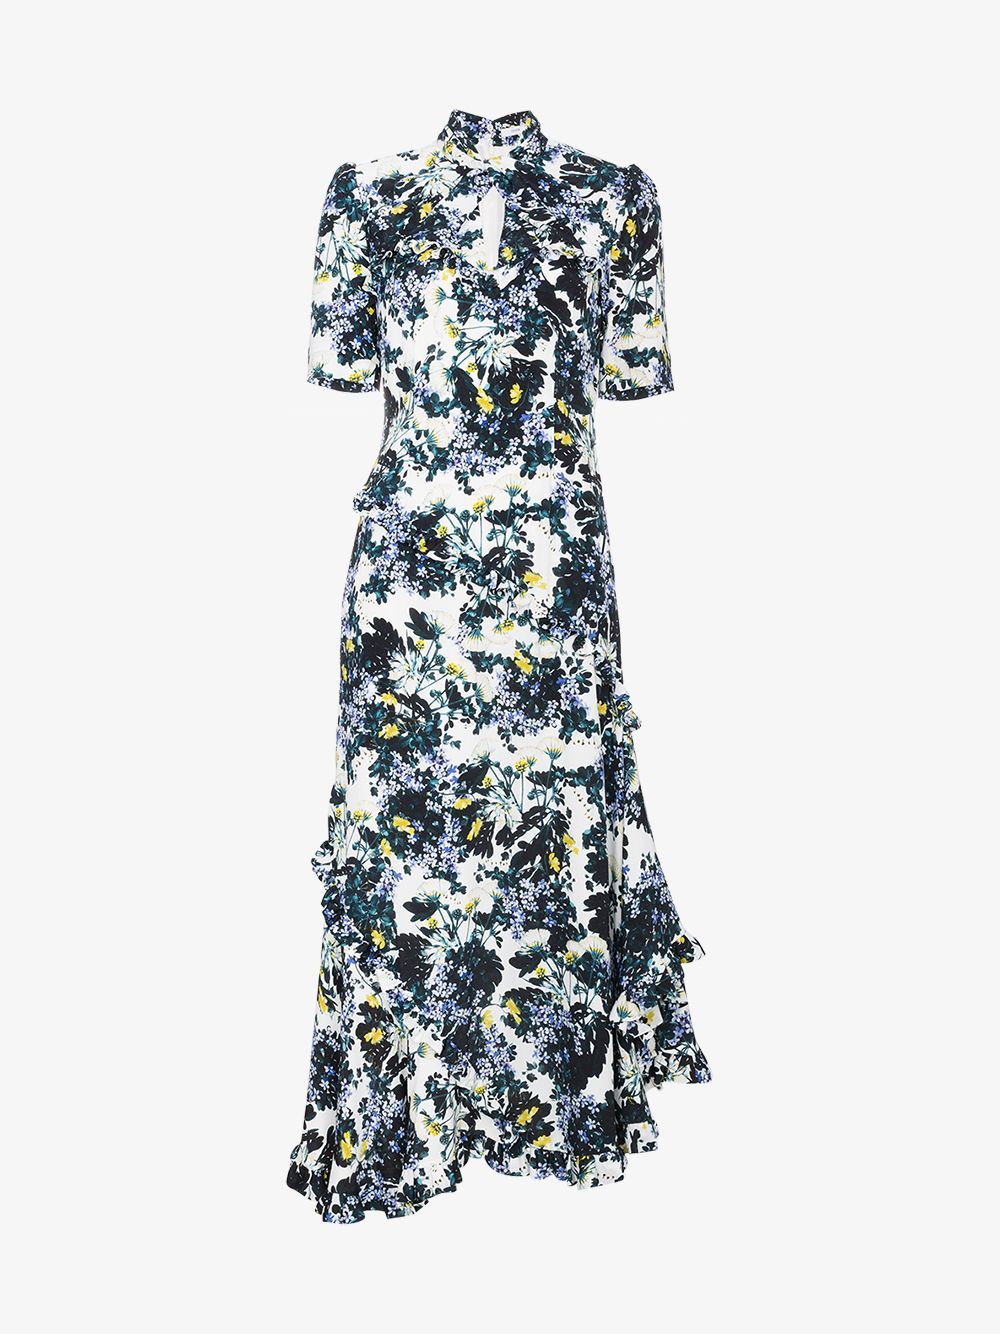 Erdem Silk floral dress with twist detail | Browns Fashion